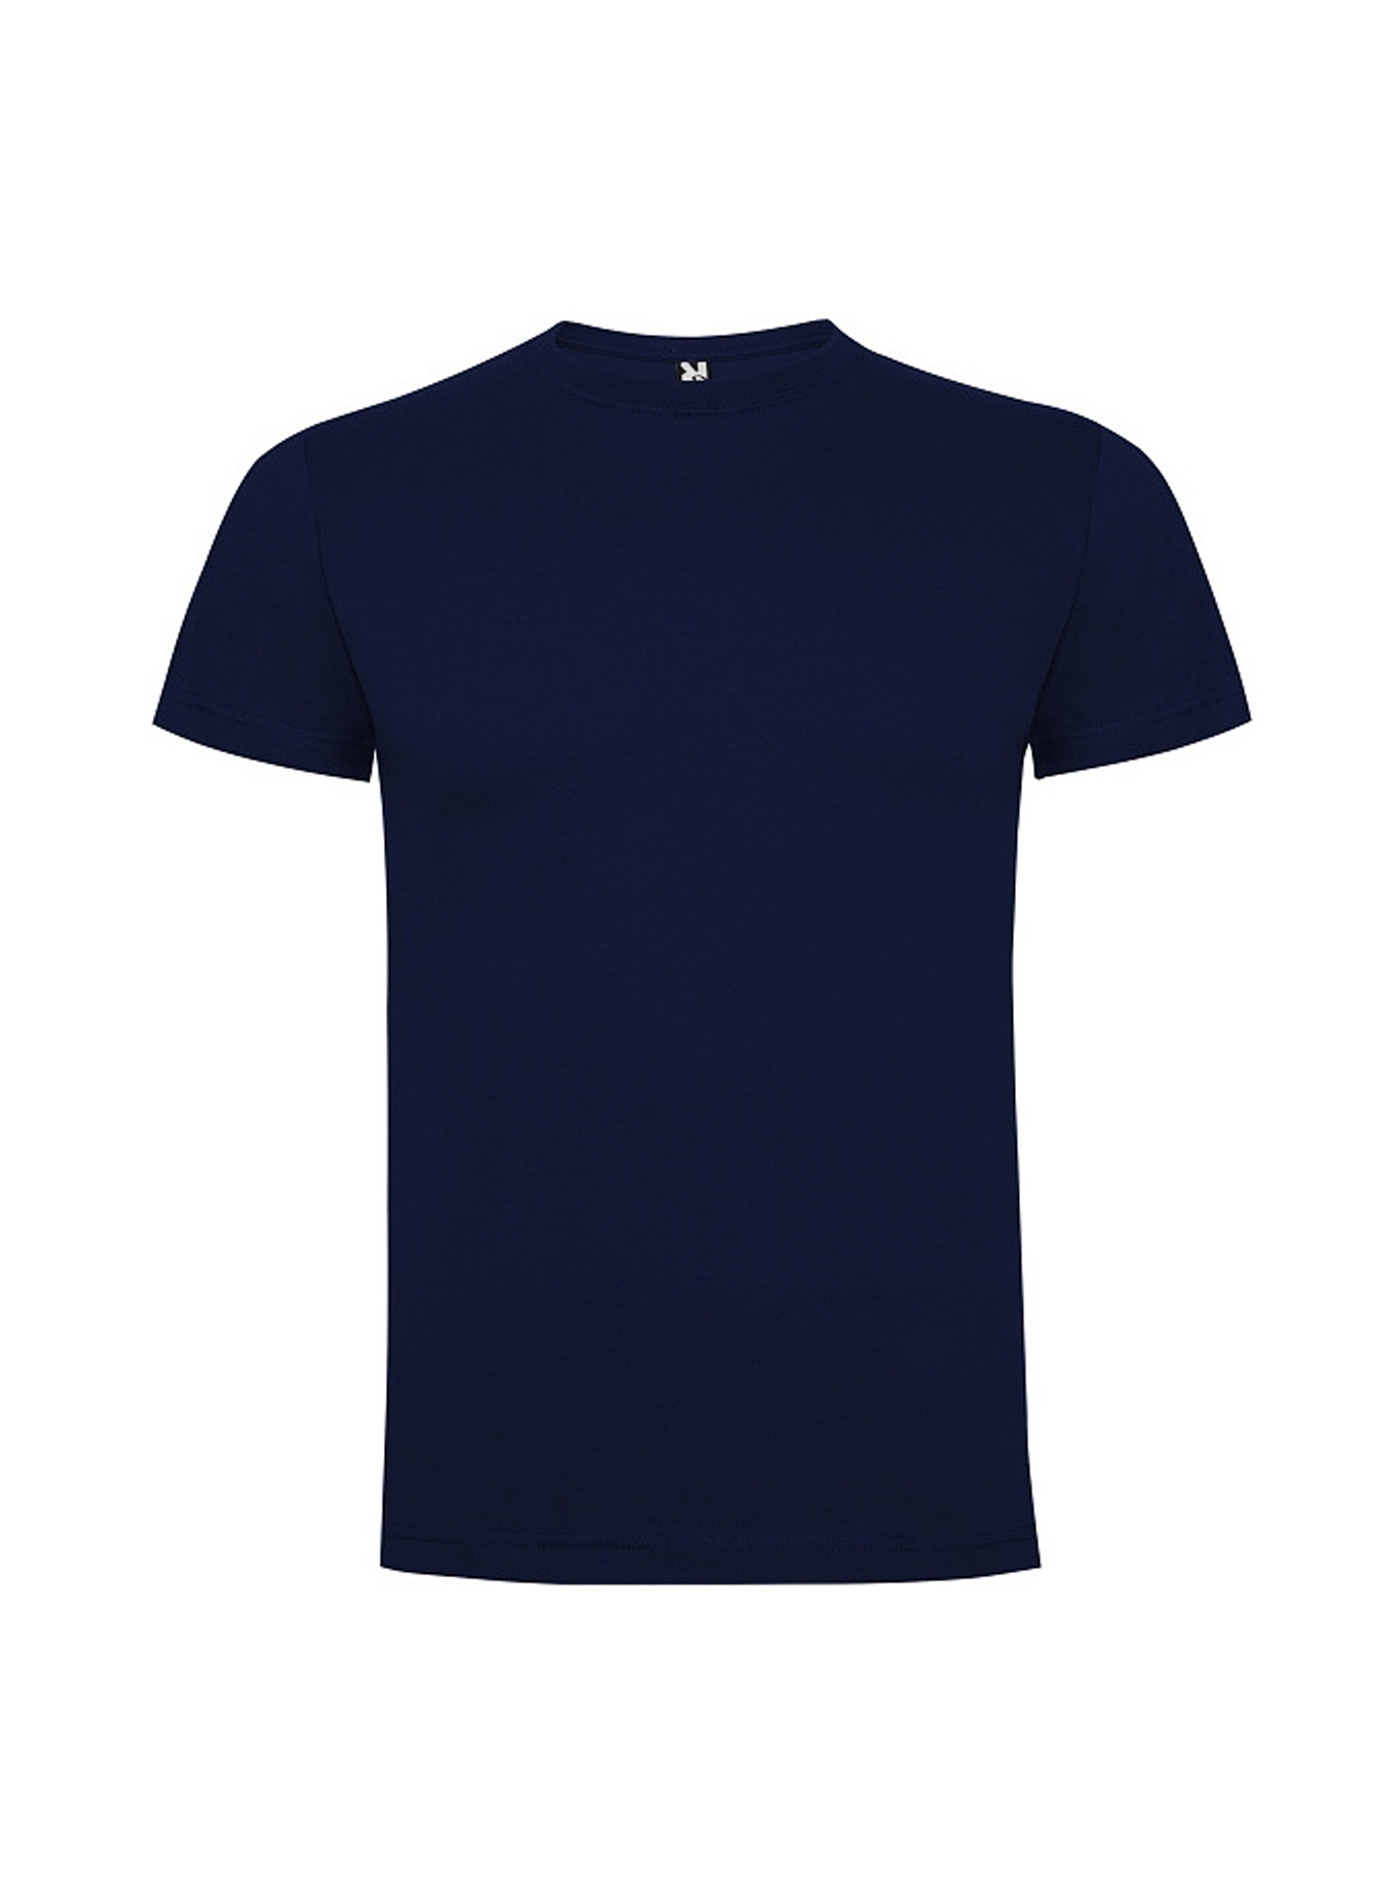 Dětské tričko Roly Dogo premium - Námořnická modrá 3-4